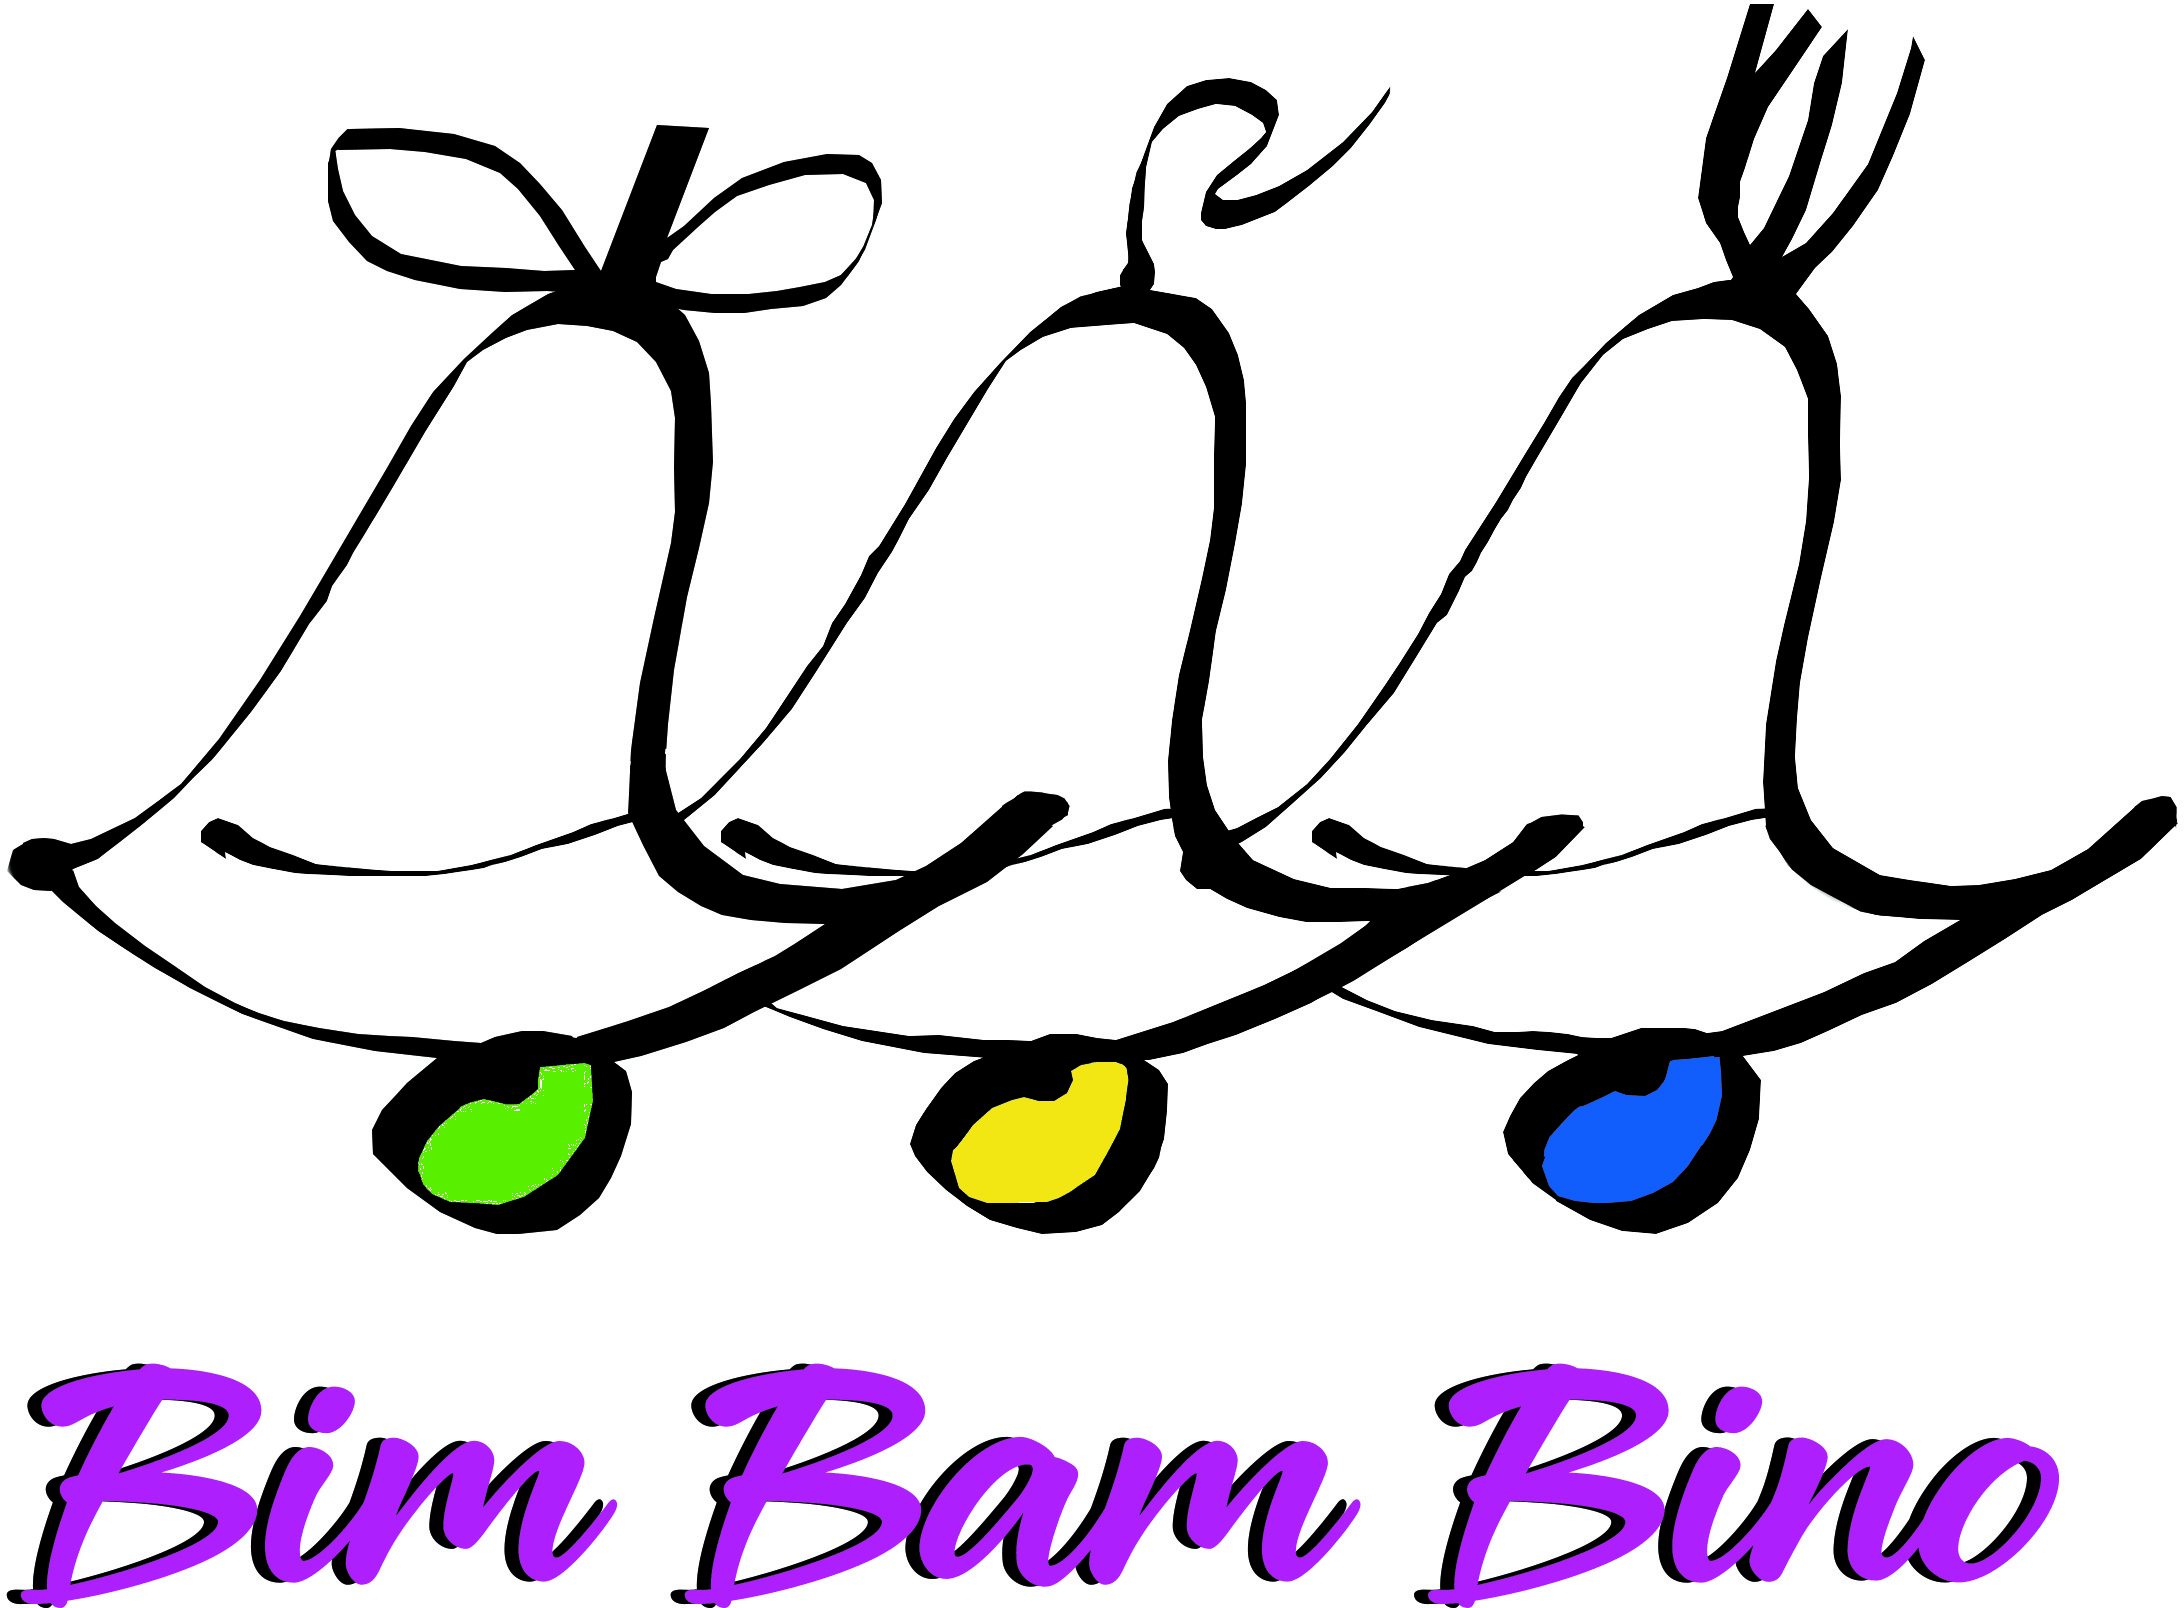 Przedszkole Bim-Bam-Bino w Toruniu